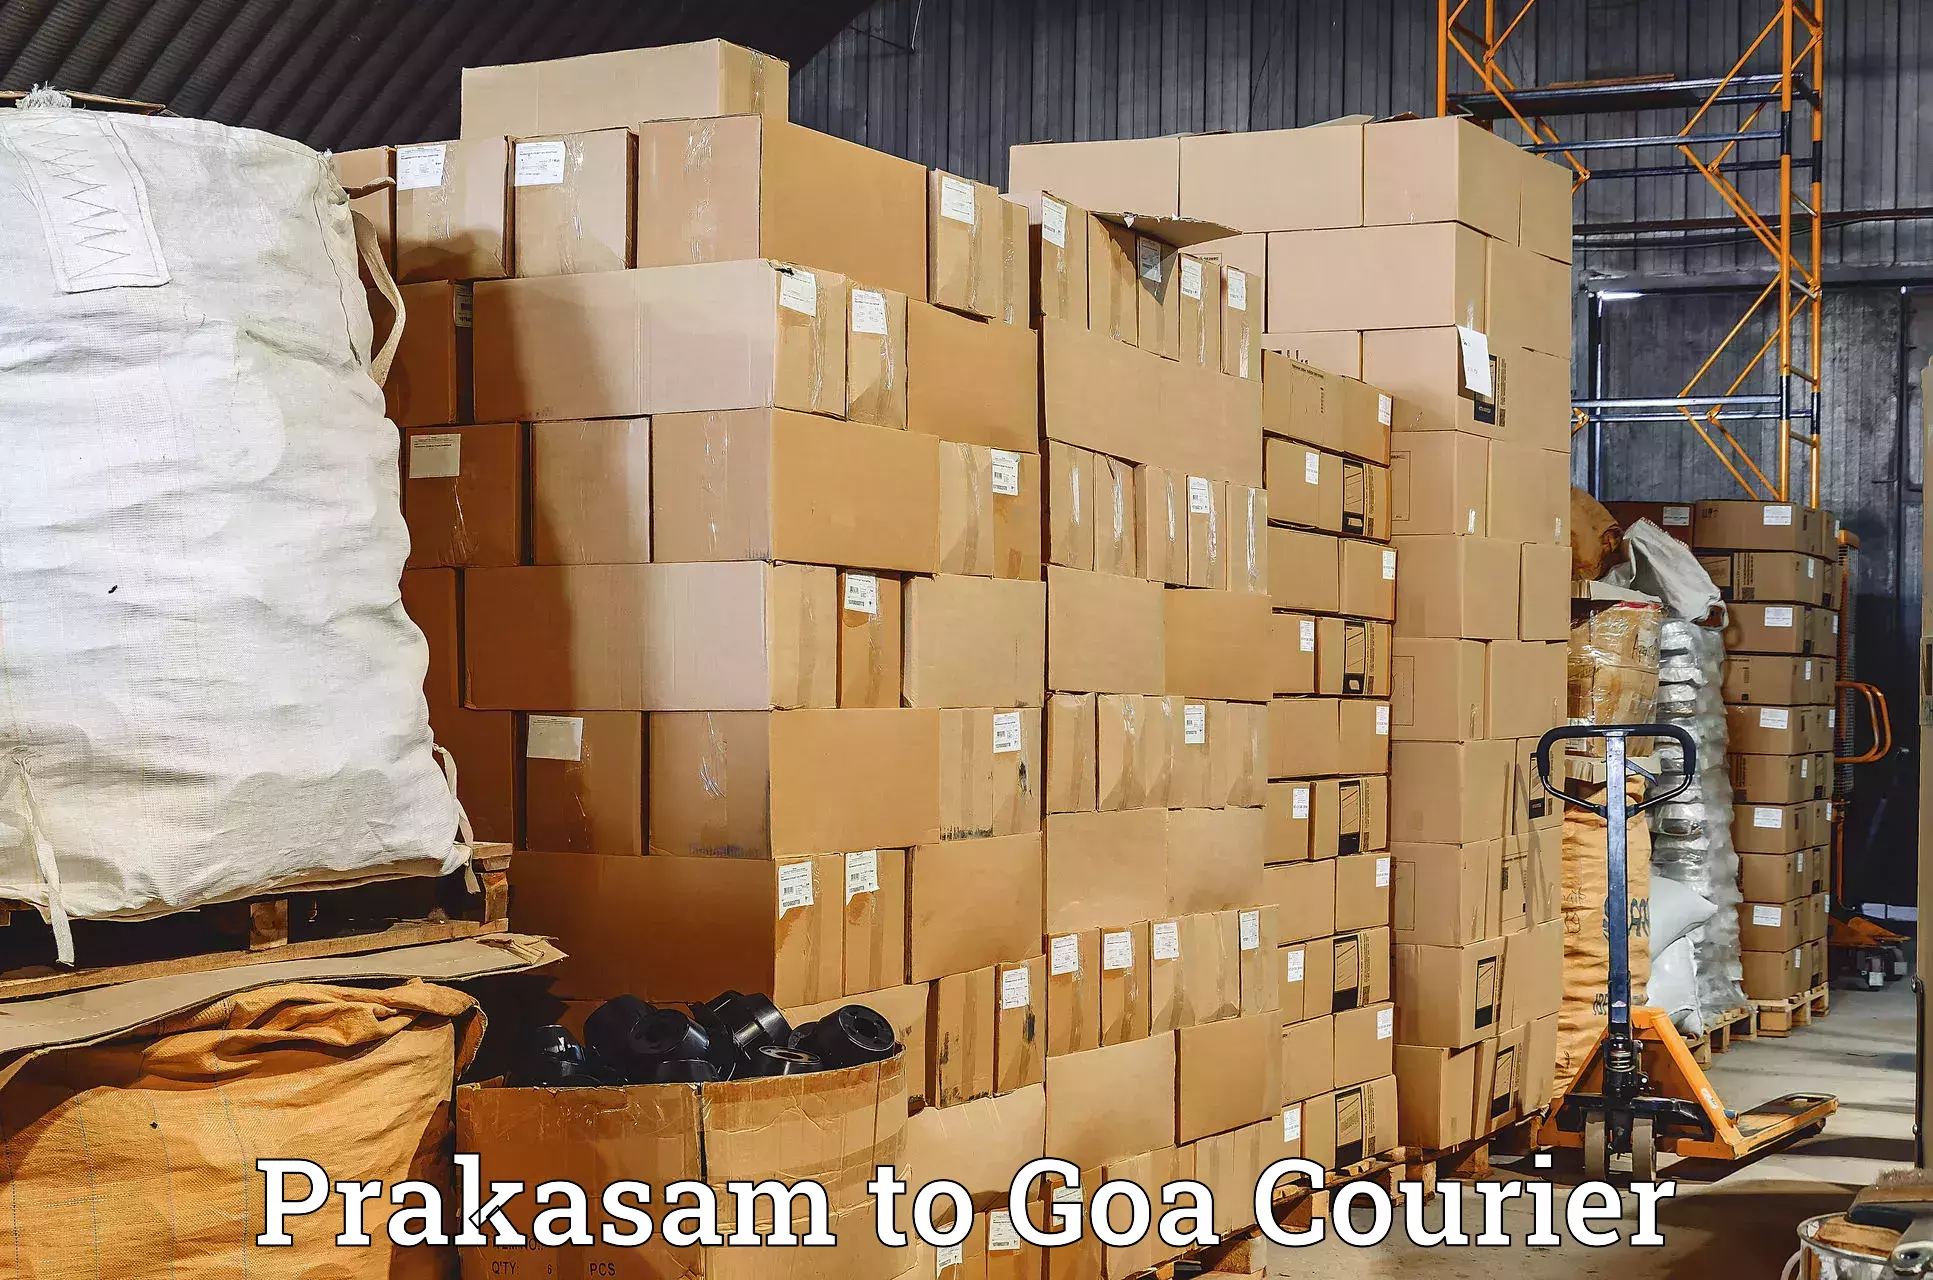 Reliable logistics providers Prakasam to Goa